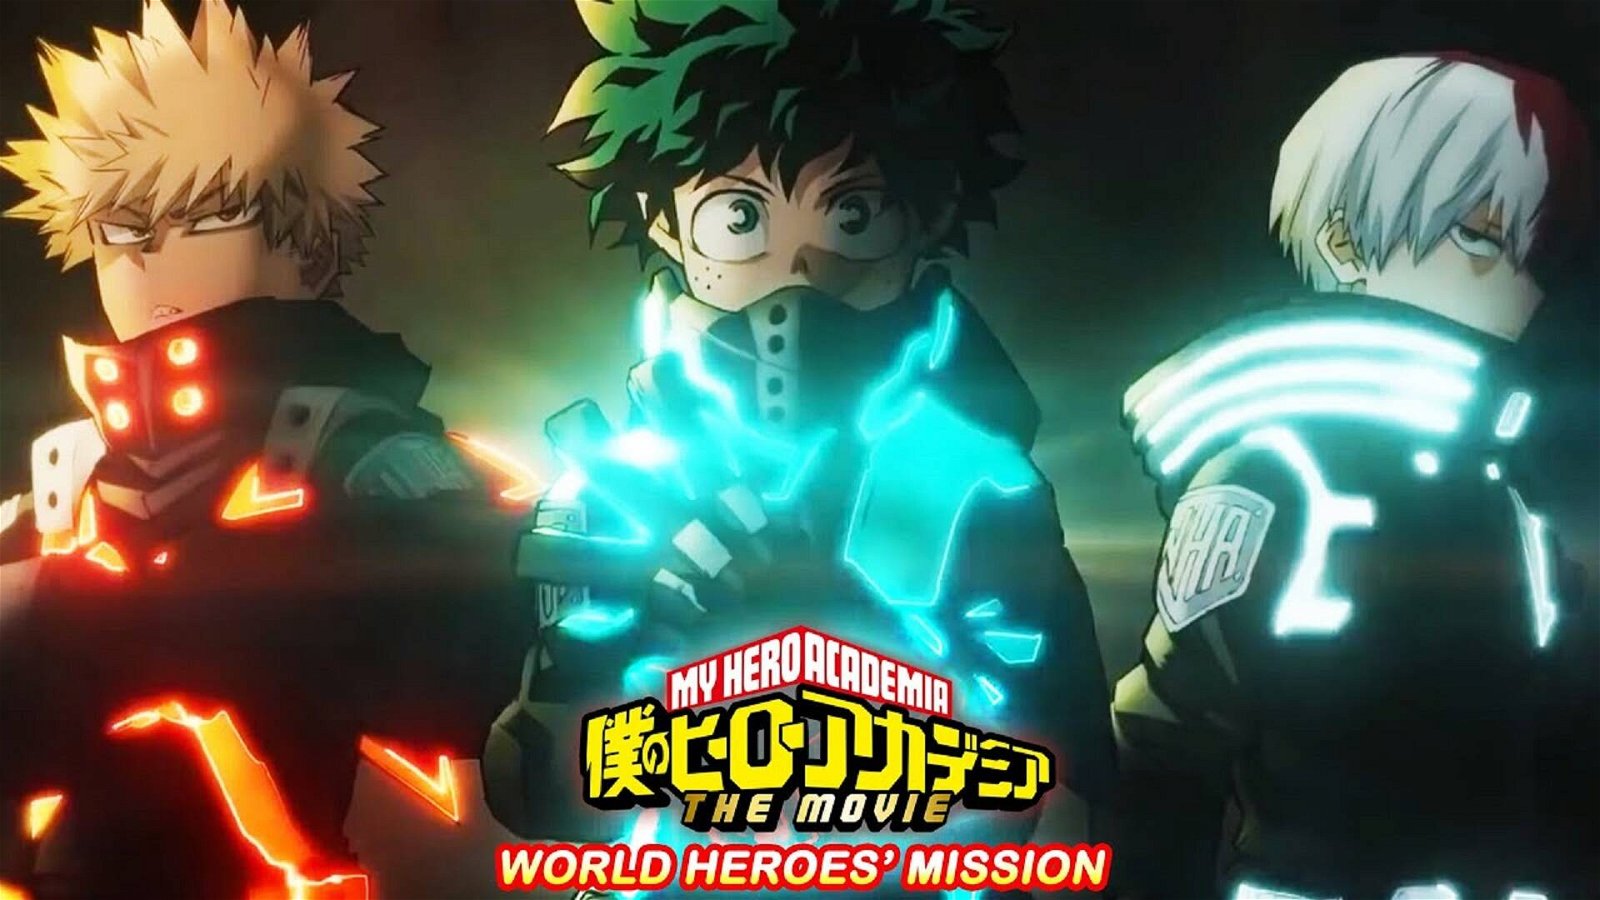 Immagine di My Hero Academia: World Heroes’ Mission, iniziata ufficialmente la produzione